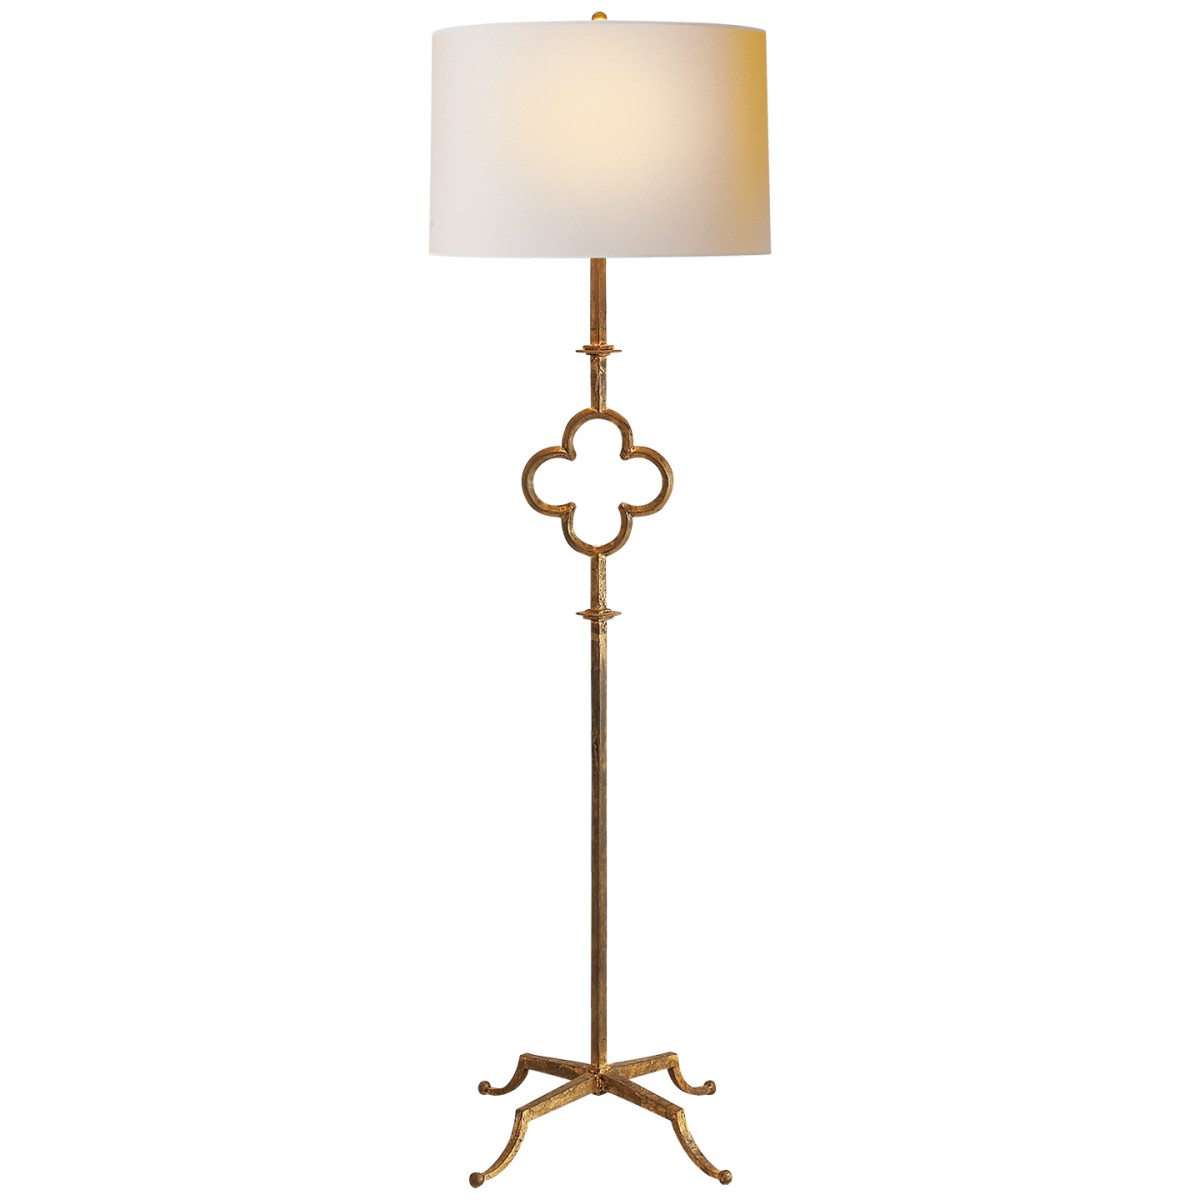 Quatrefoil Floor Lamp with Linen Shade